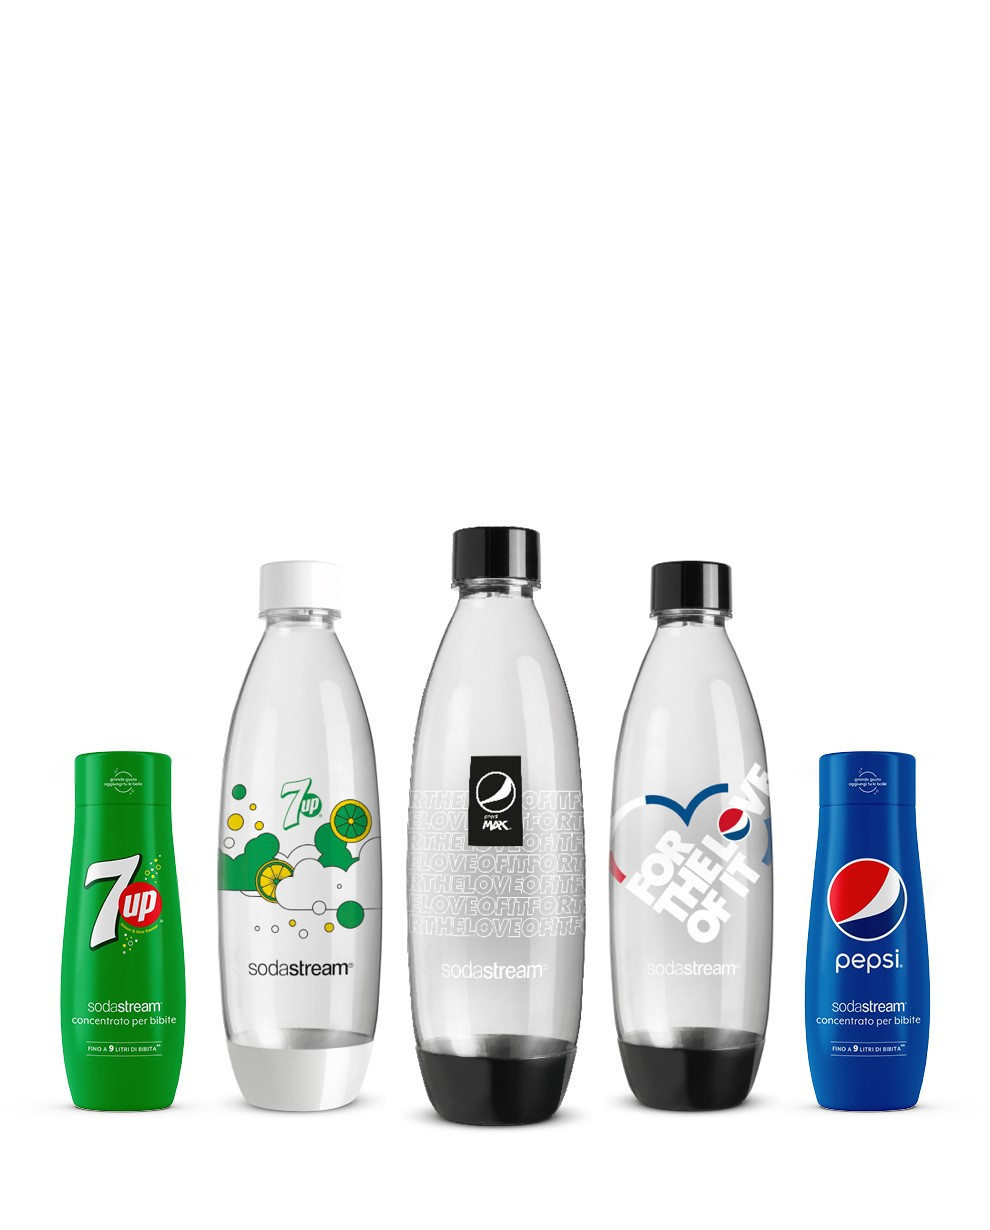 Concentrati Pepsi Seven Up e Bottiglie Fuse